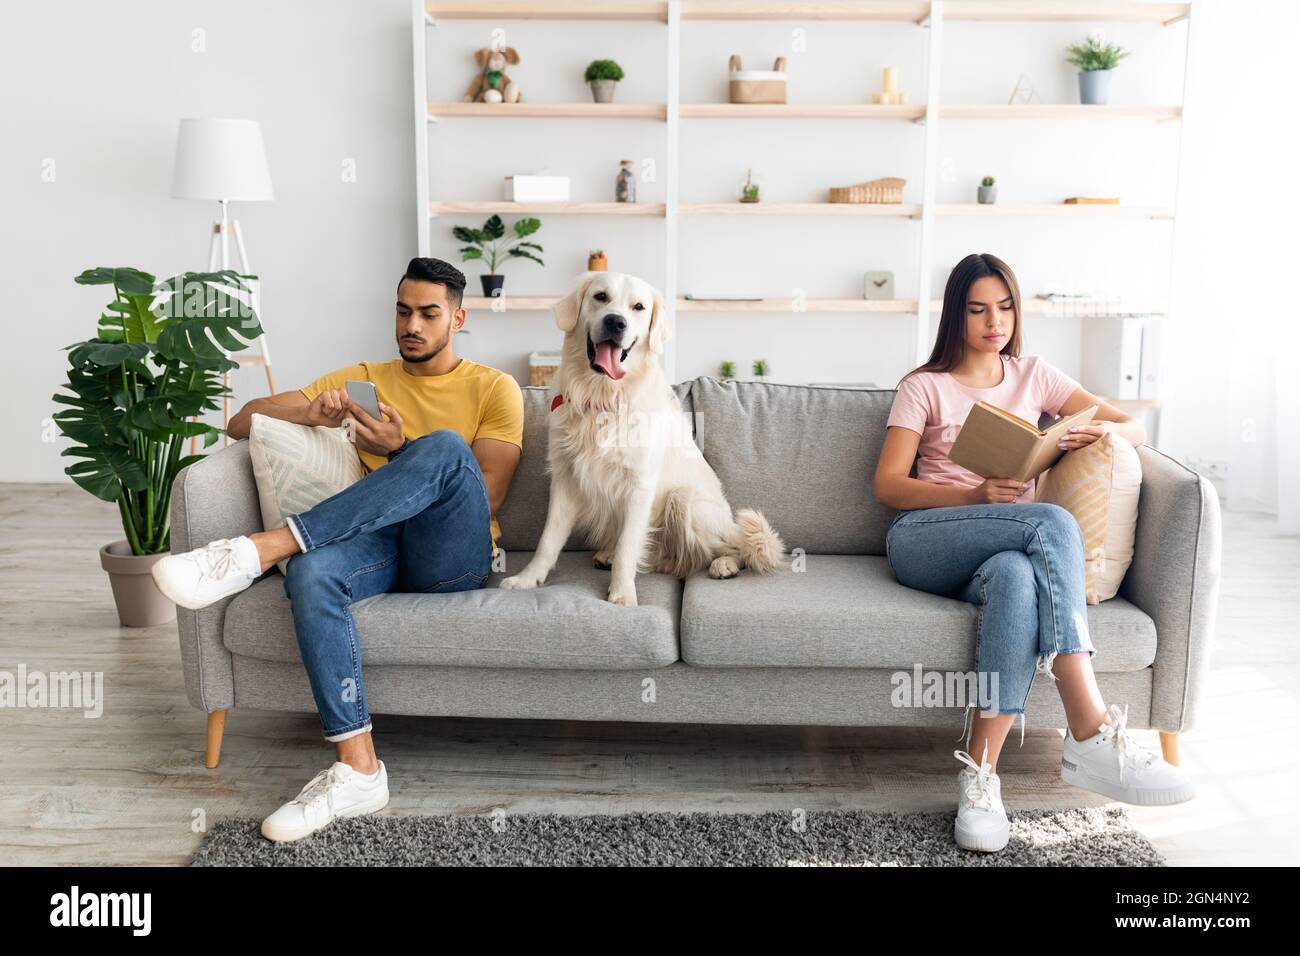 Giovane coppia inerraciale in conflitto, seduta su lati opposti del divano a casa, cane tra loro Foto Stock